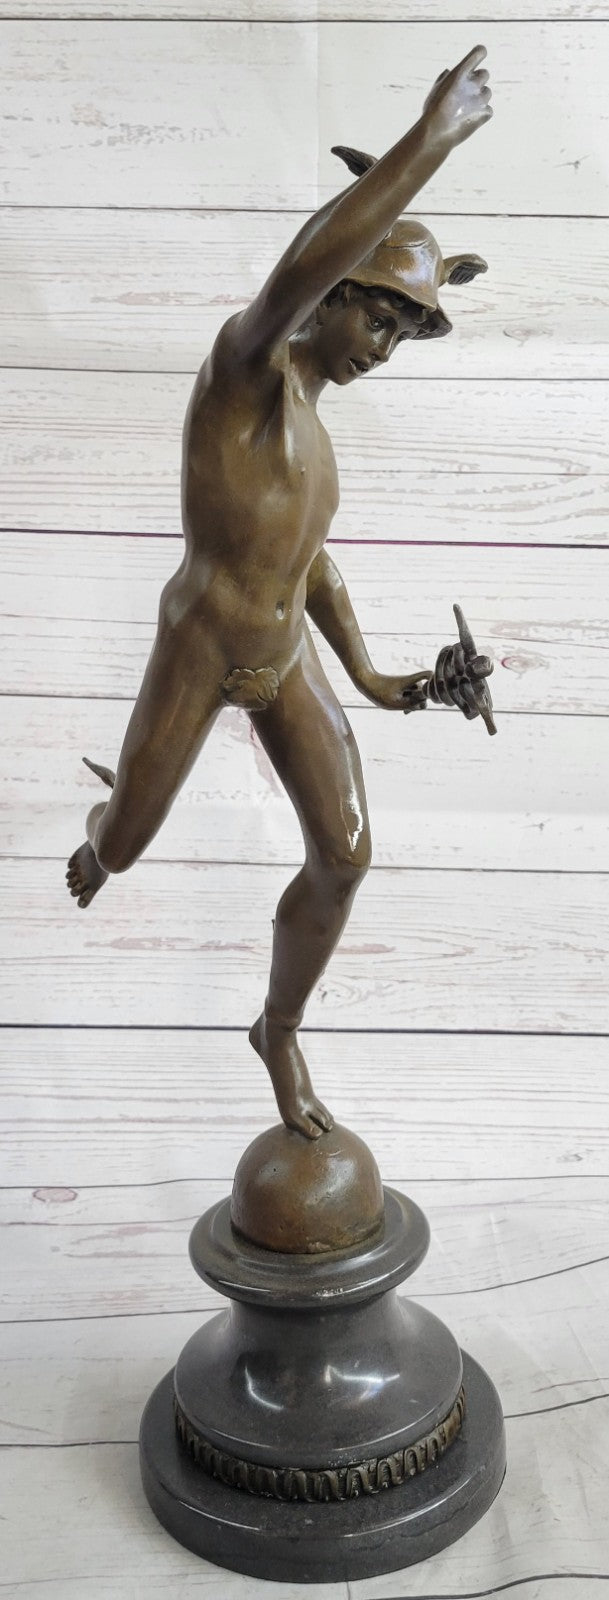 Handmade Bronze Statue Winged Mercury Hermes Mythology Flying Mercury Nude Gift